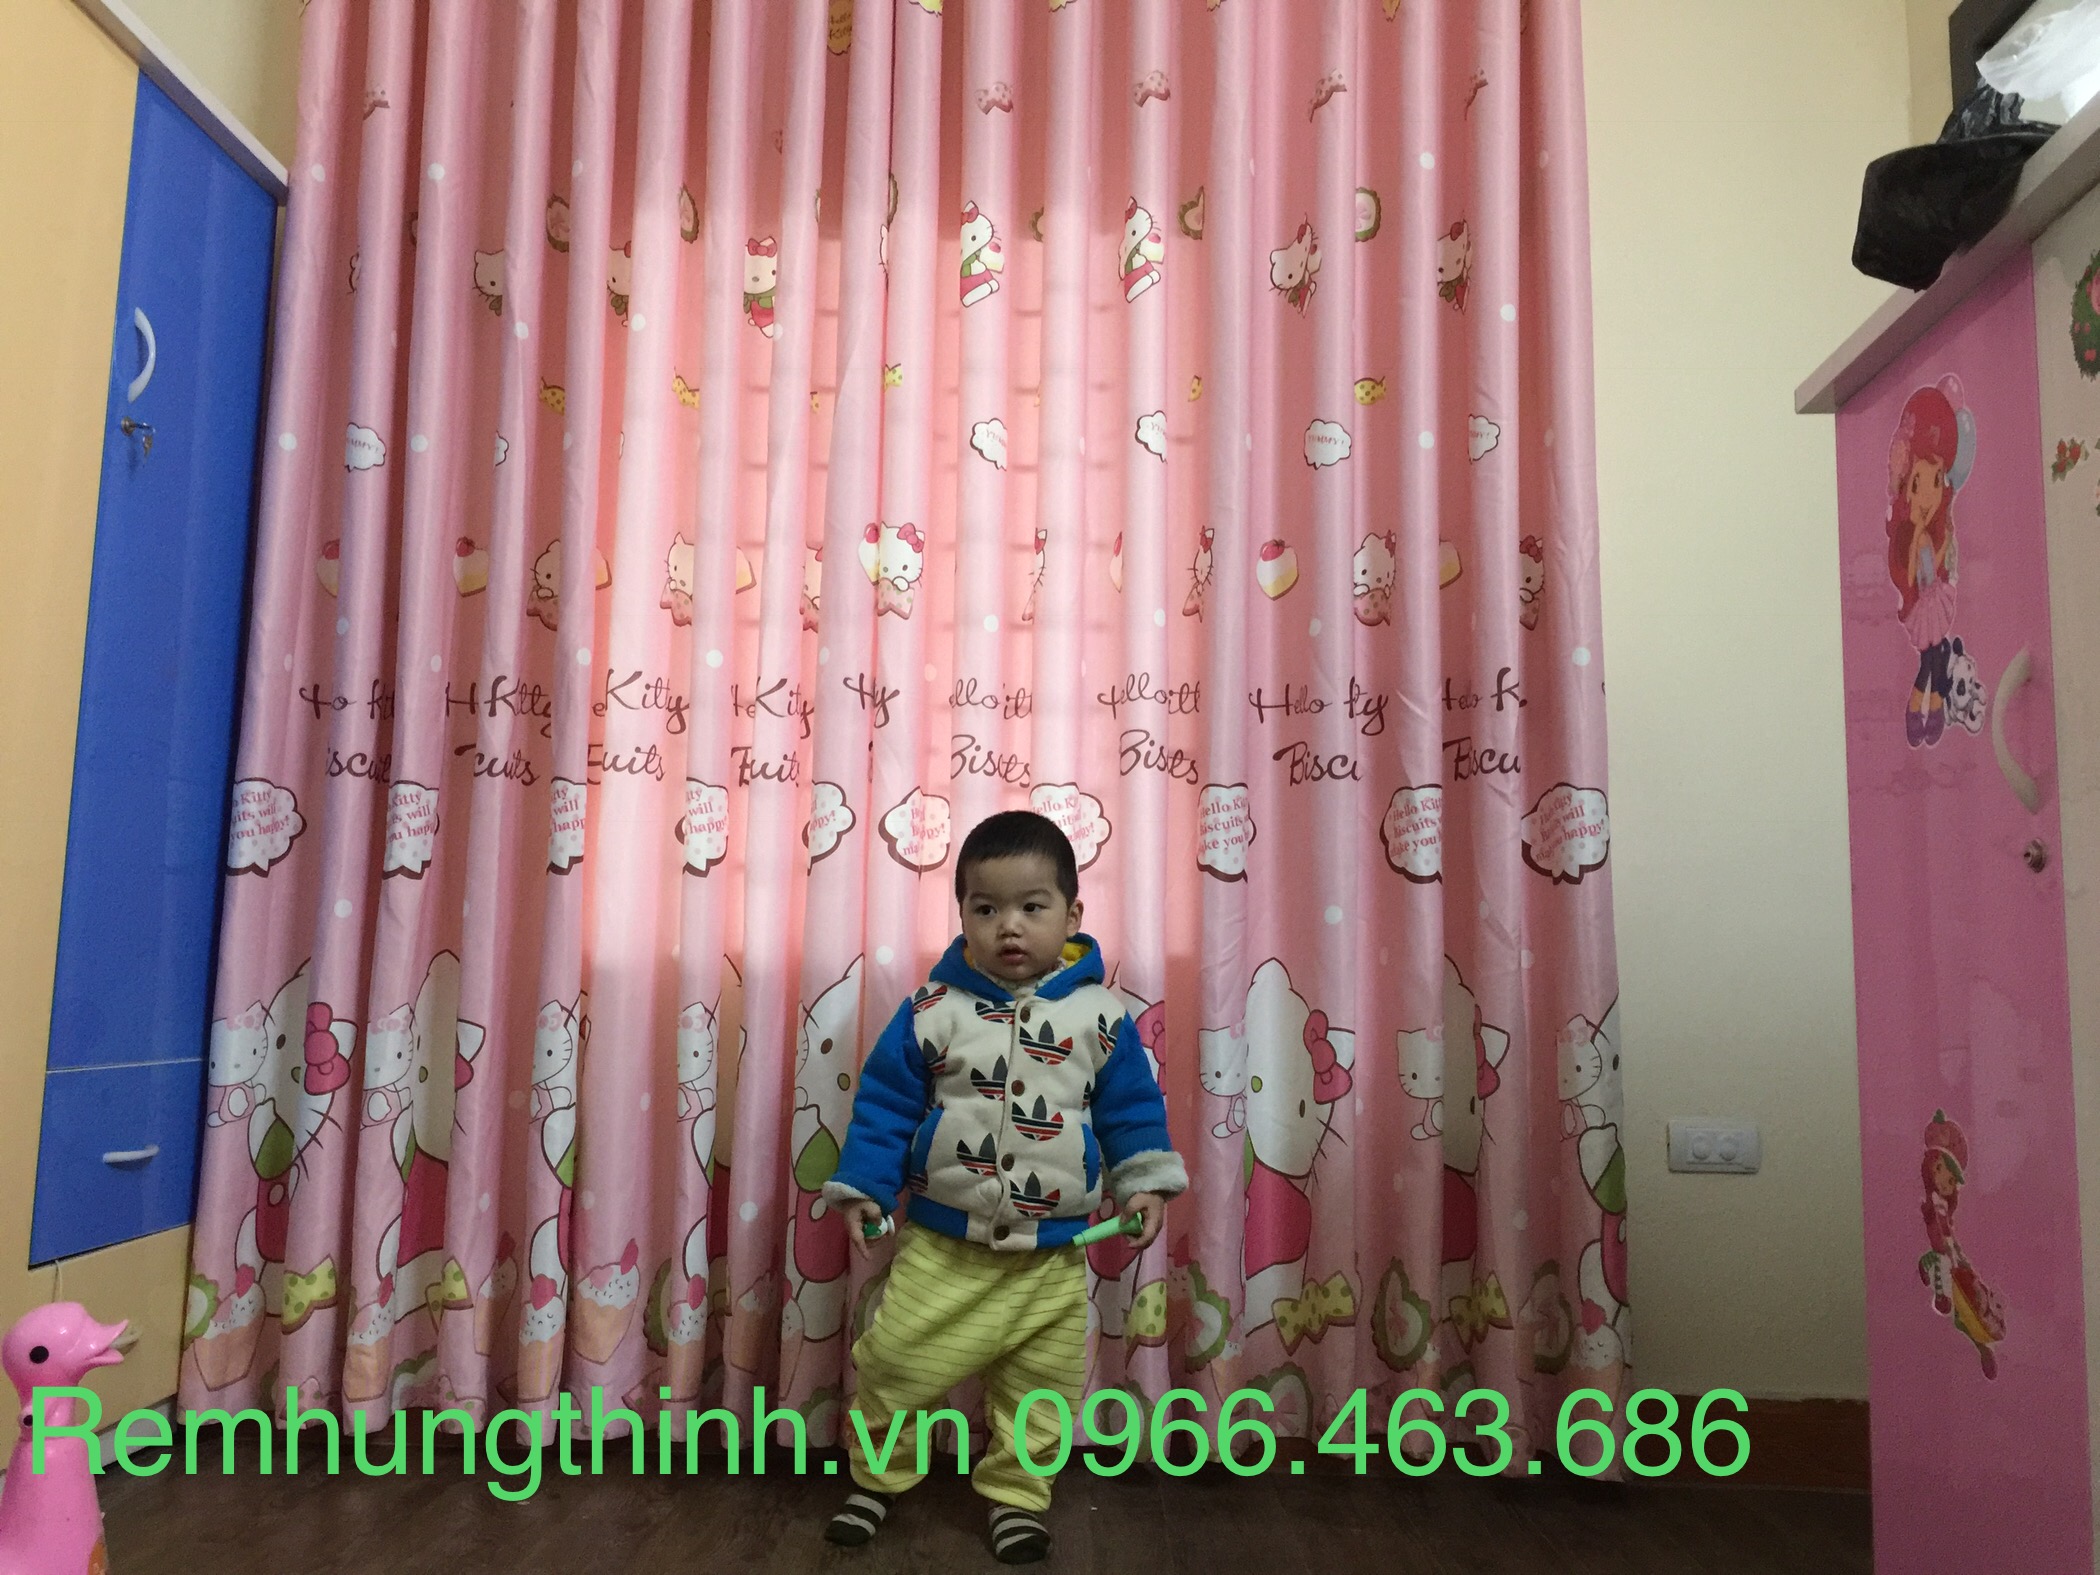 Chọn mua rèm vải phù hợp với không gian nhà tại Ba Đình – Hà Nội